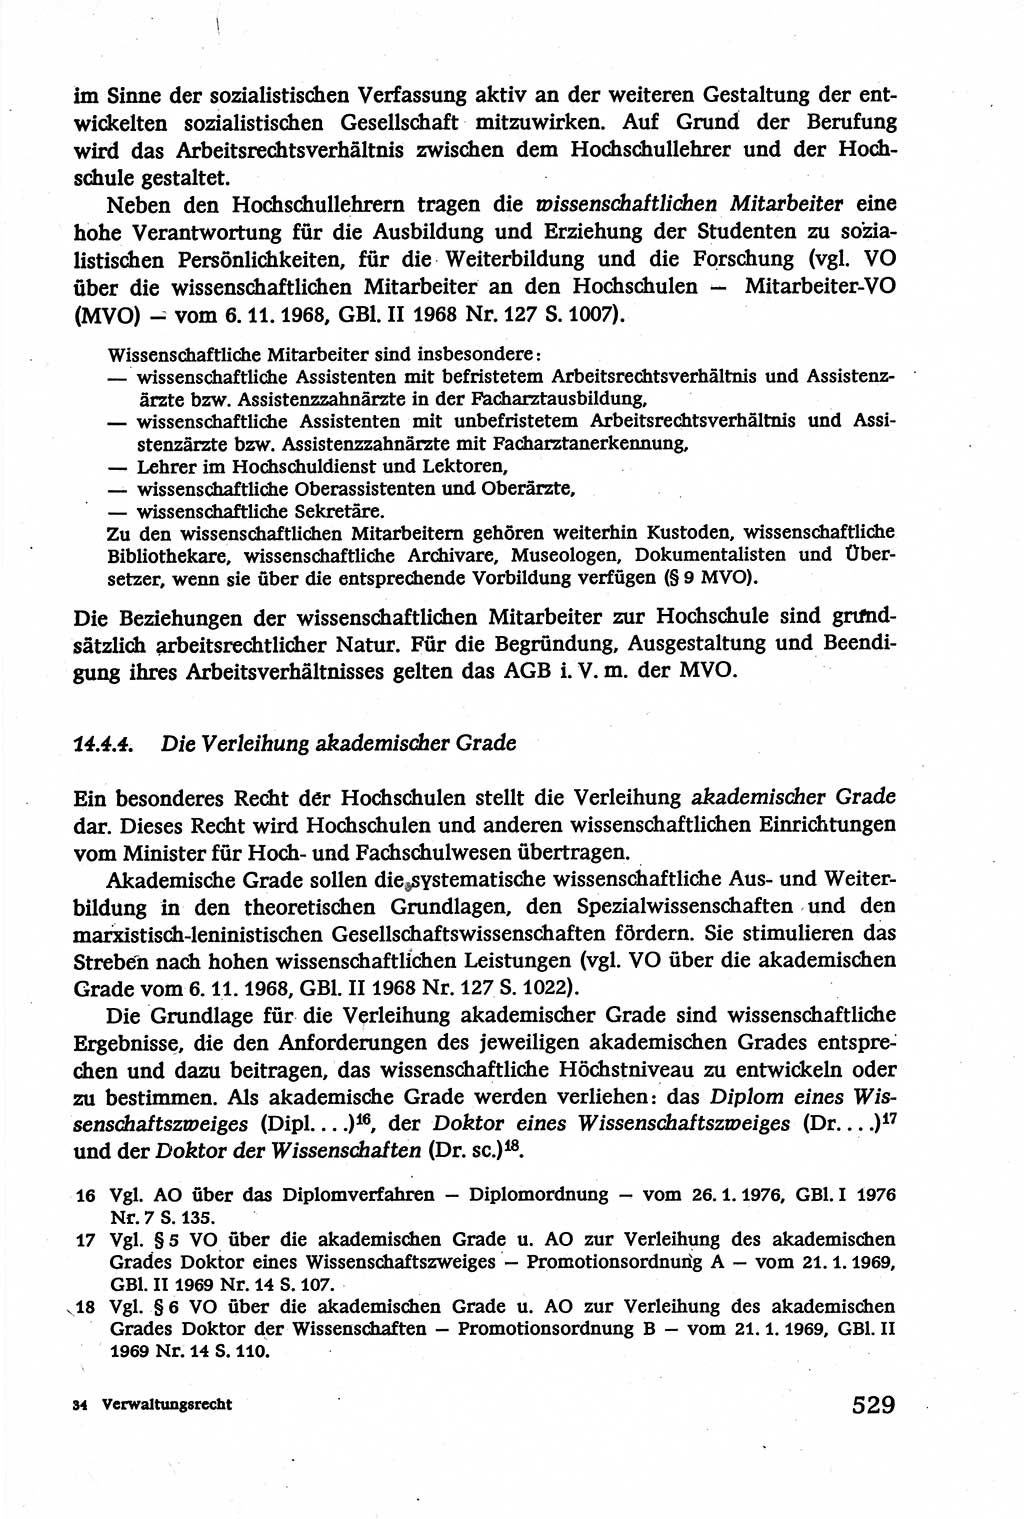 Verwaltungsrecht [Deutsche Demokratische Republik (DDR)], Lehrbuch 1979, Seite 529 (Verw.-R. DDR Lb. 1979, S. 529)